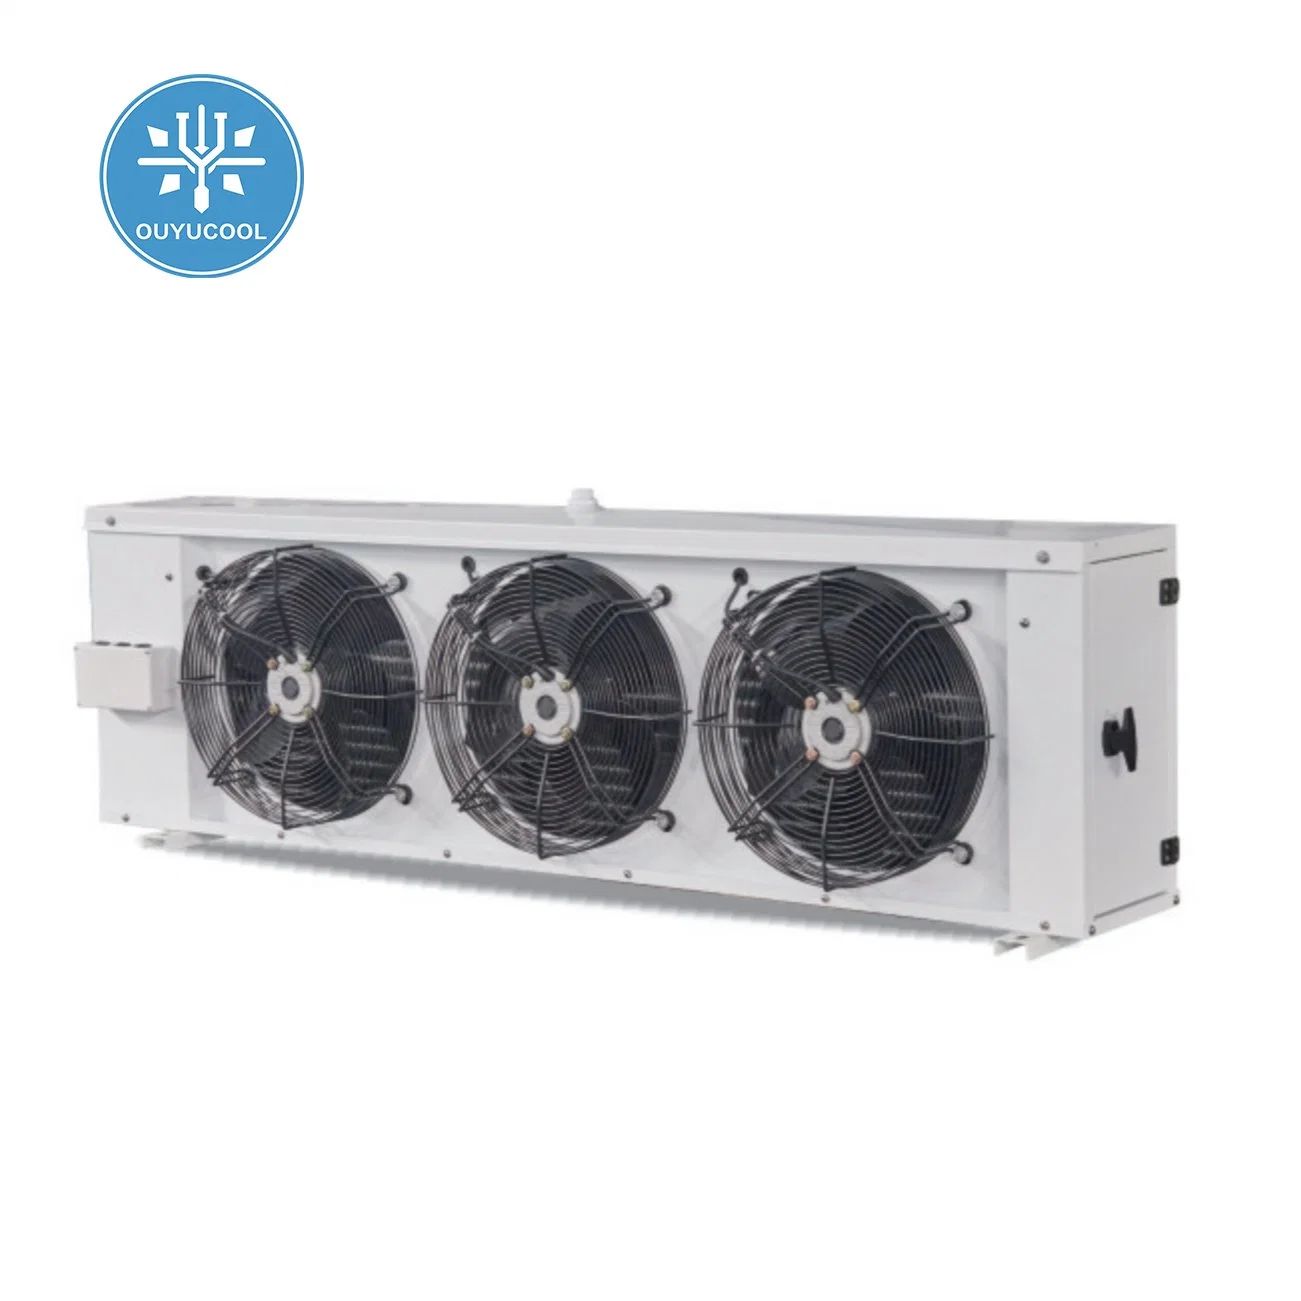 Охладитель воздуха испарителя для охлаждения на заводе-изготовителе обеспечивает обслуживание OEM/ODM в холодном состоянии Устройство для хранения в холодильных помещениях с конденсацией и CE